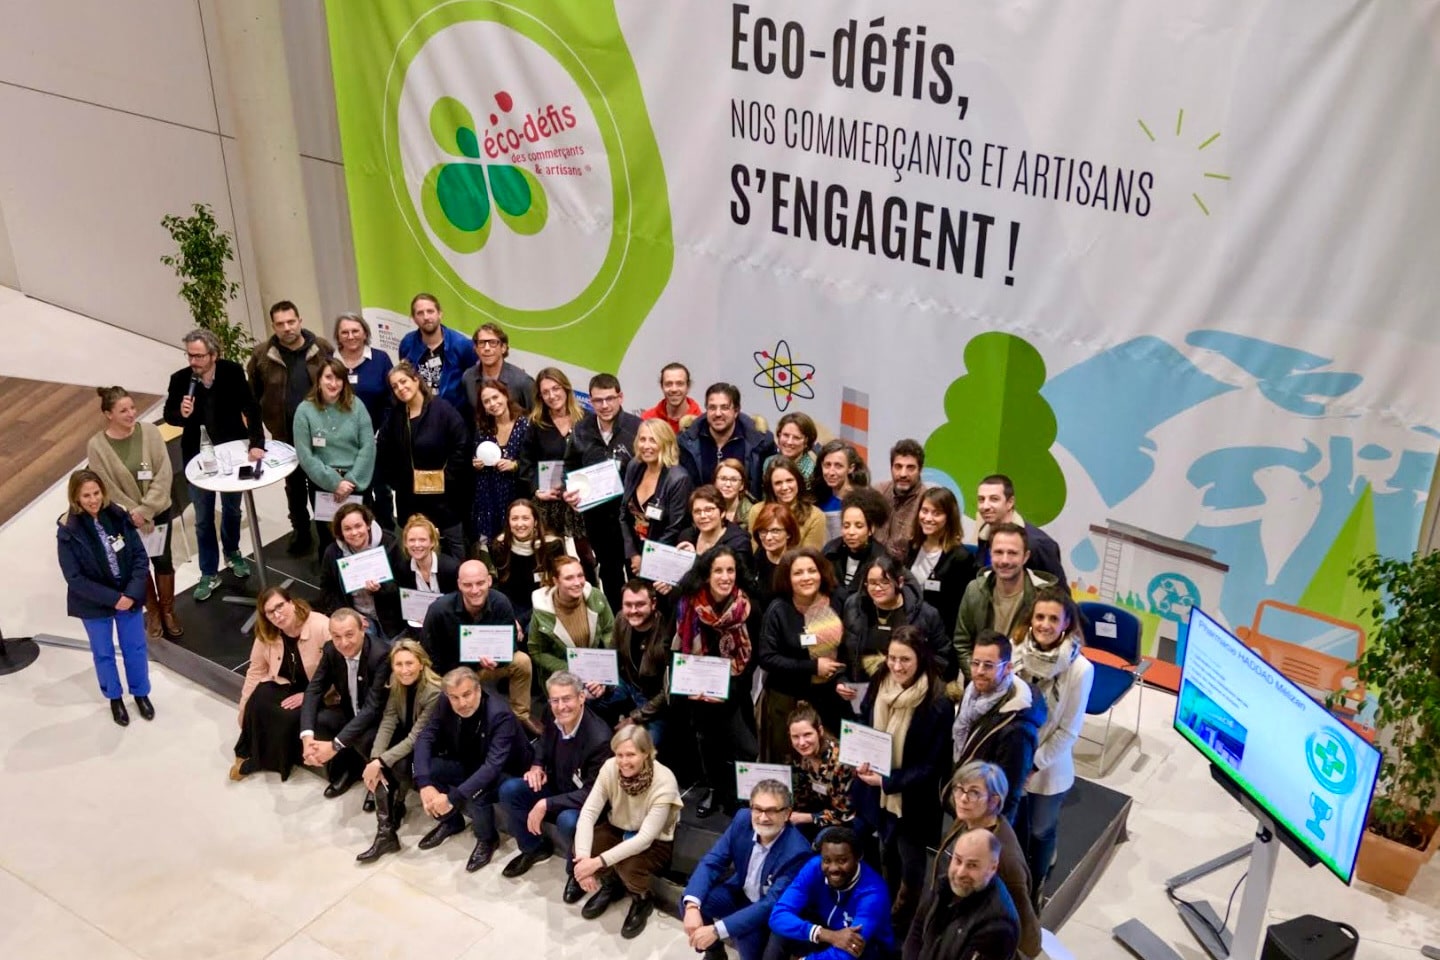 Eco-Défis, Les commerçants et artisans marseillais récompensés pour leurs engagements environnementaux, Made in Marseille